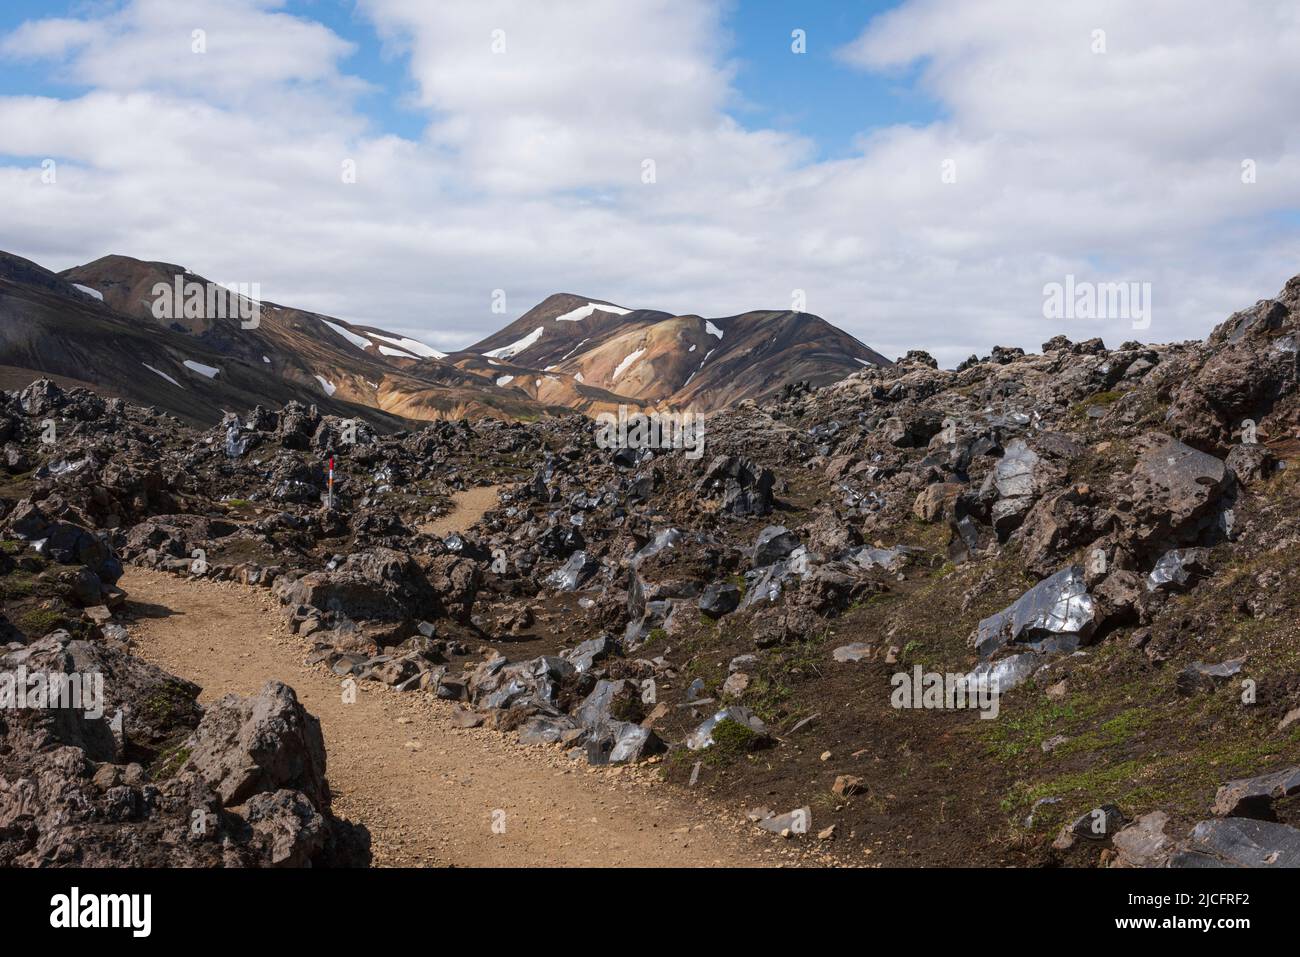 Il sentiero escursionistico di Laugavegur è il più famoso tour di trekking di più giorni in Islanda. Paesaggio girato dalla zona intorno a Landmannalaugar, punto di partenza del sentiero escursionistico a lunga distanza negli altopiani dell'Islanda. Percorso attraverso un campo di lava. Foto Stock